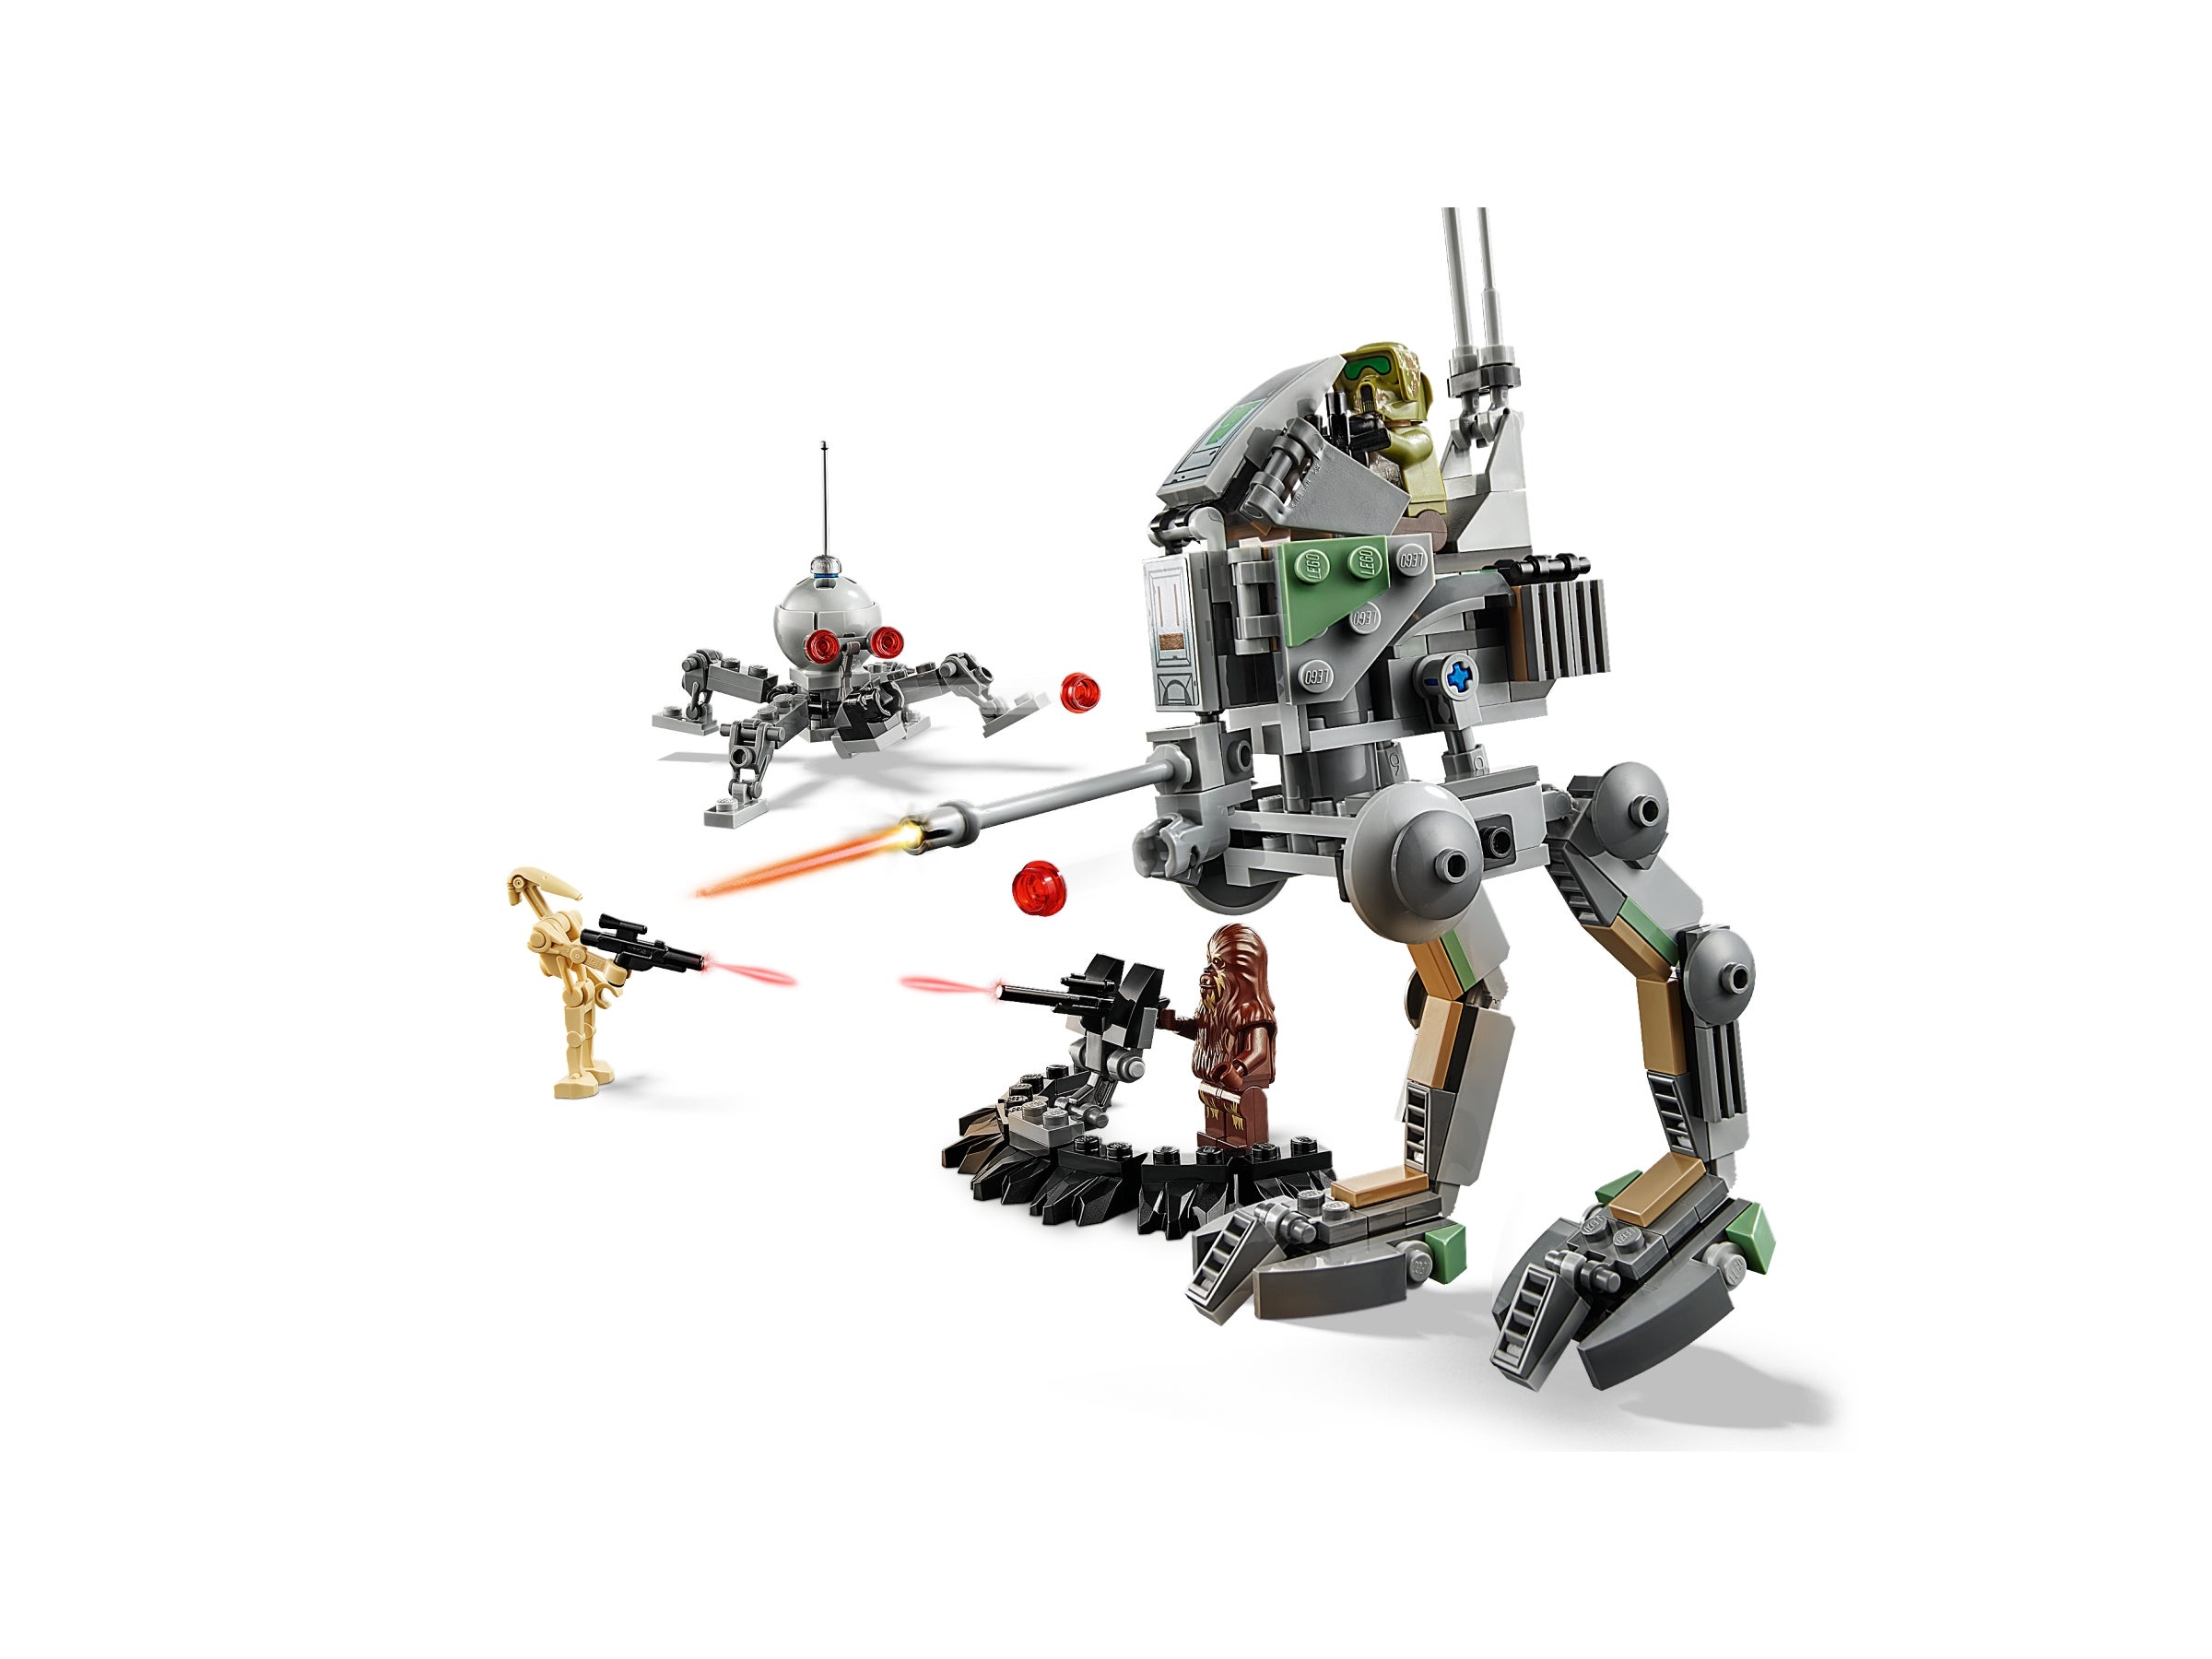 Lego® Star Wars Minifigur Darth Vader 20 years aus Set 75261 Neu und unbespielt 